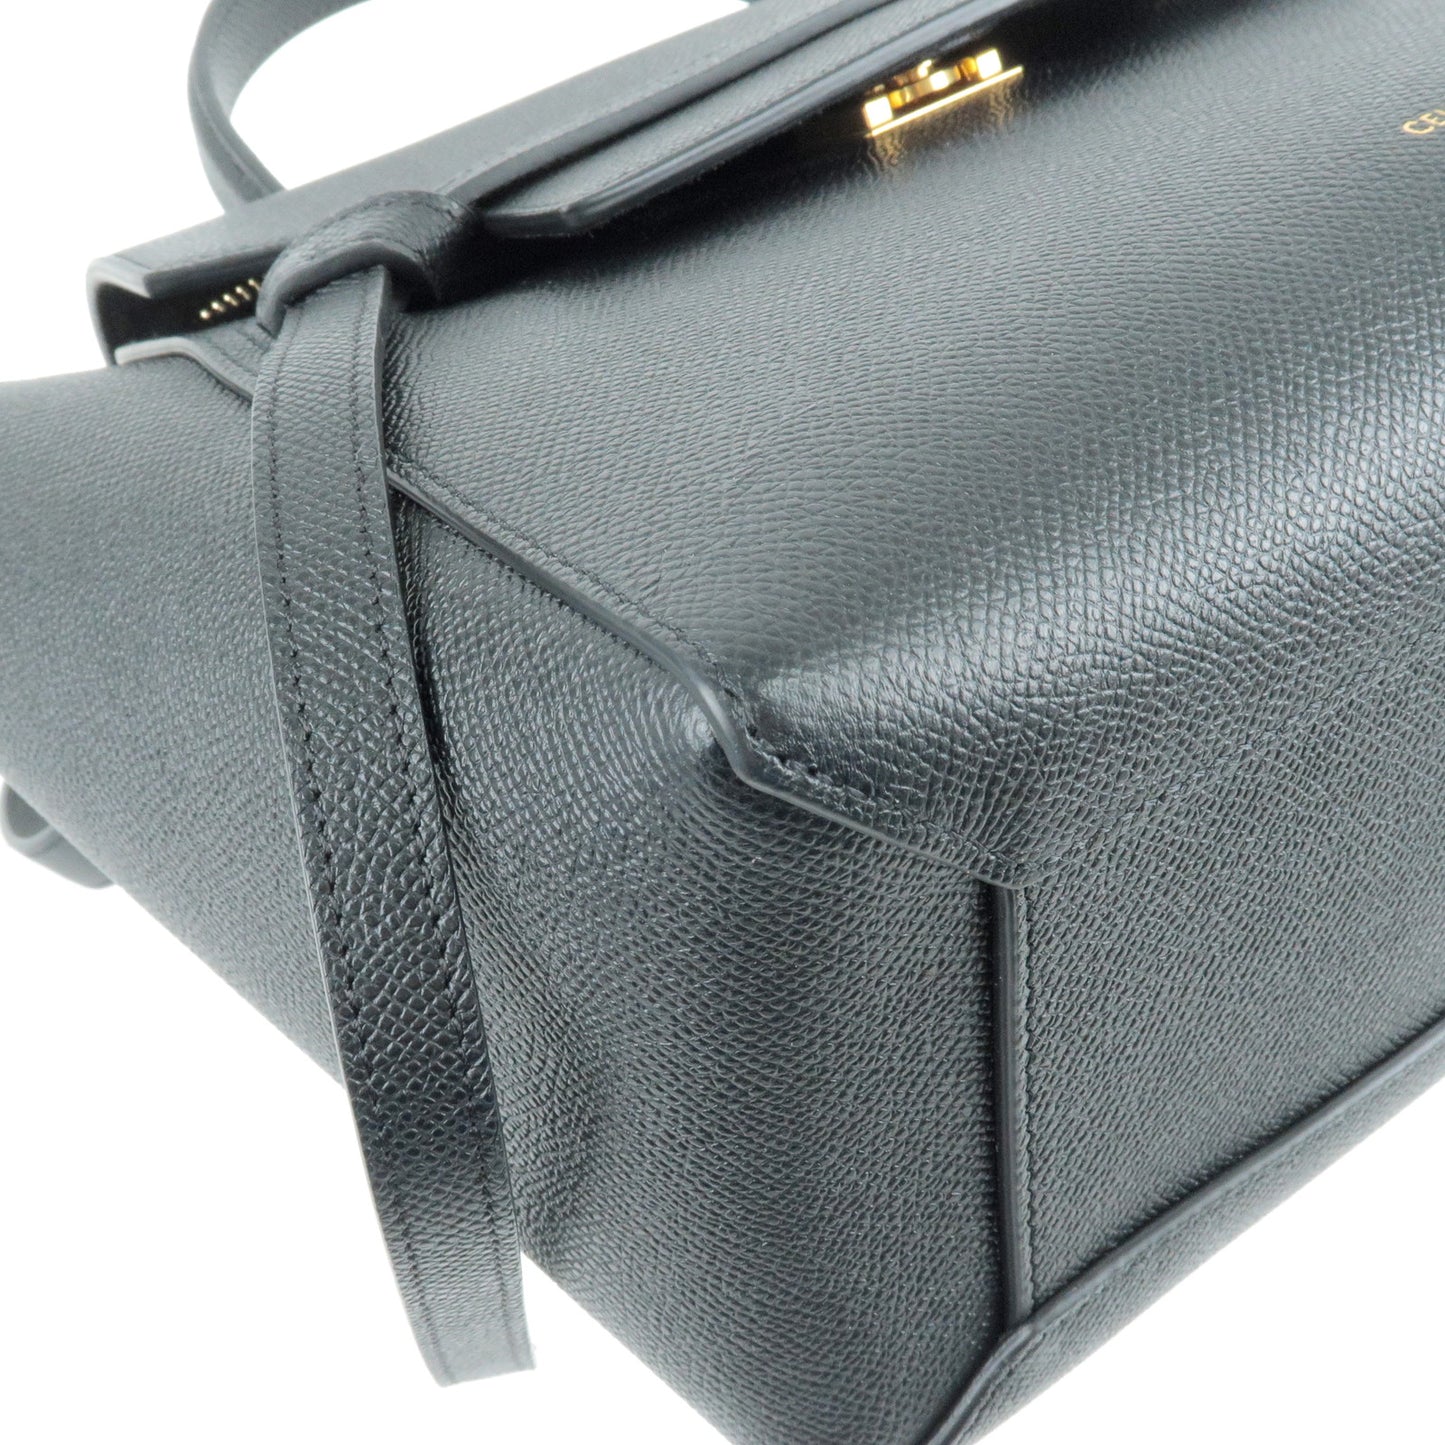 CELINE Leather Micro Belt Bag 2Way Shoulder Bag Black 189153